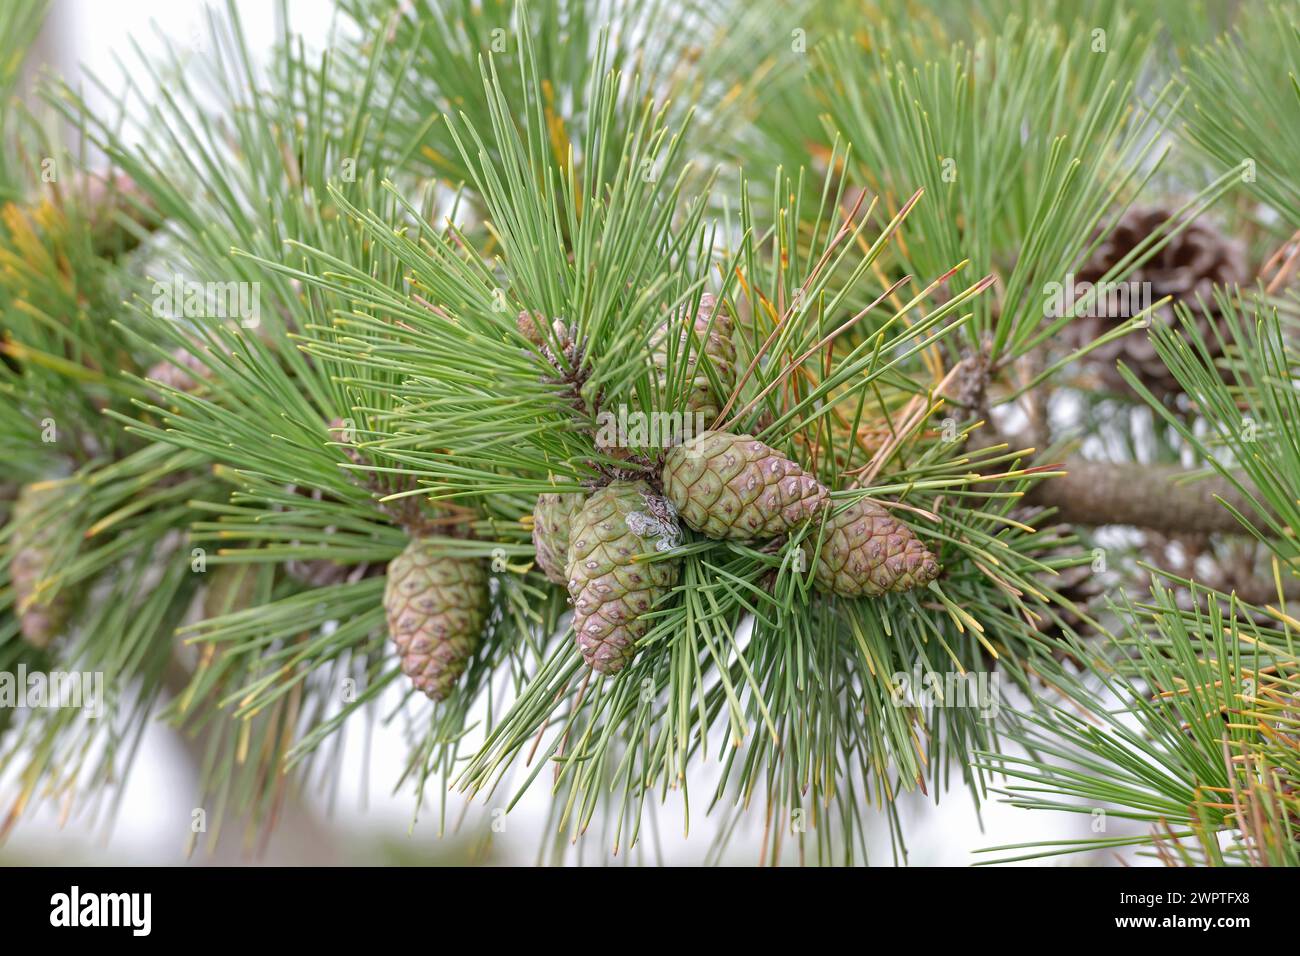 Japanese black pine (Pinus thunbergii), Matsushima Bay, Matsushima, Honshu, Japan Stock Photo